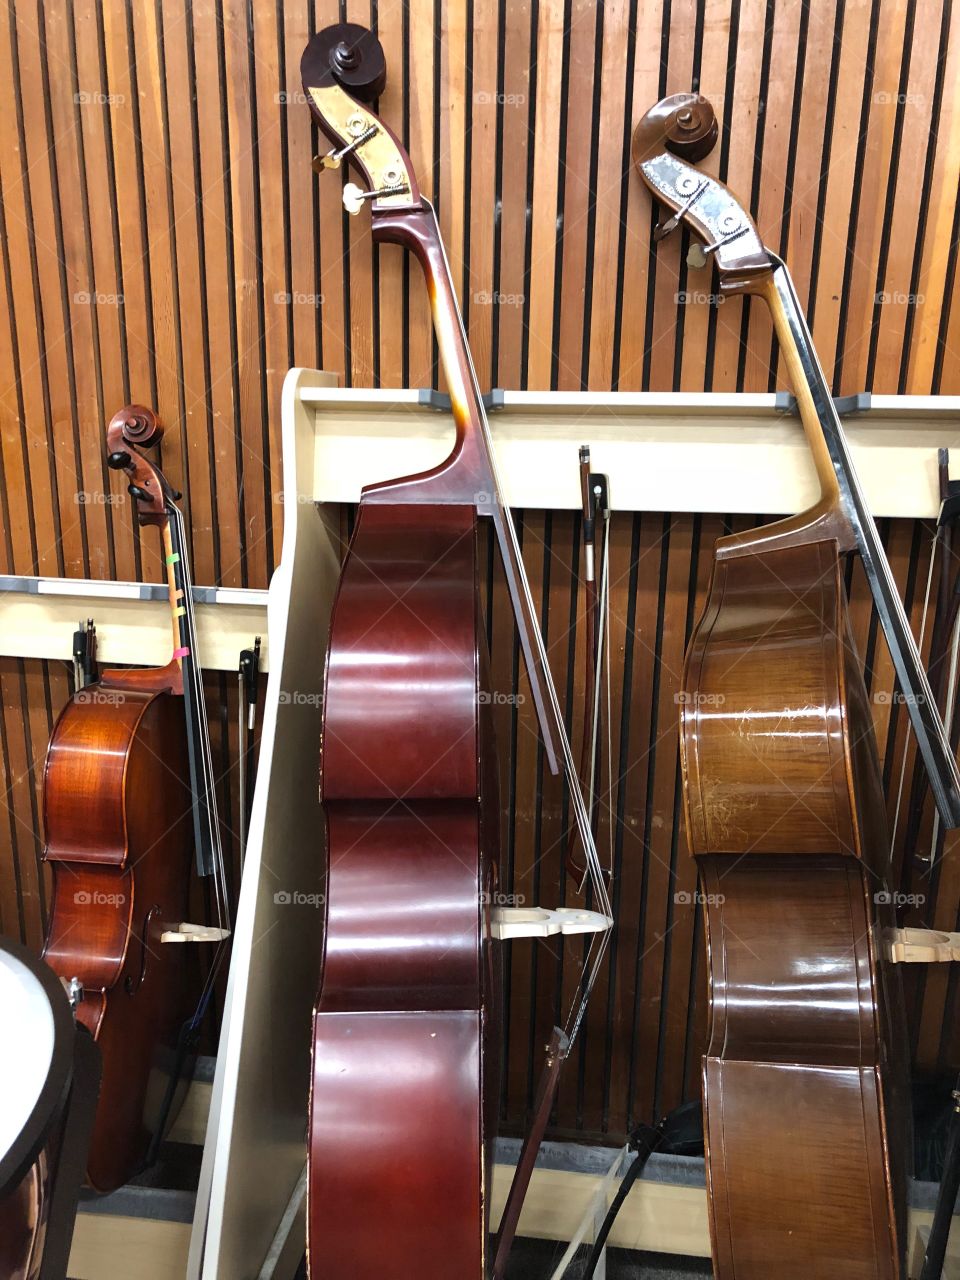 Bass and cello